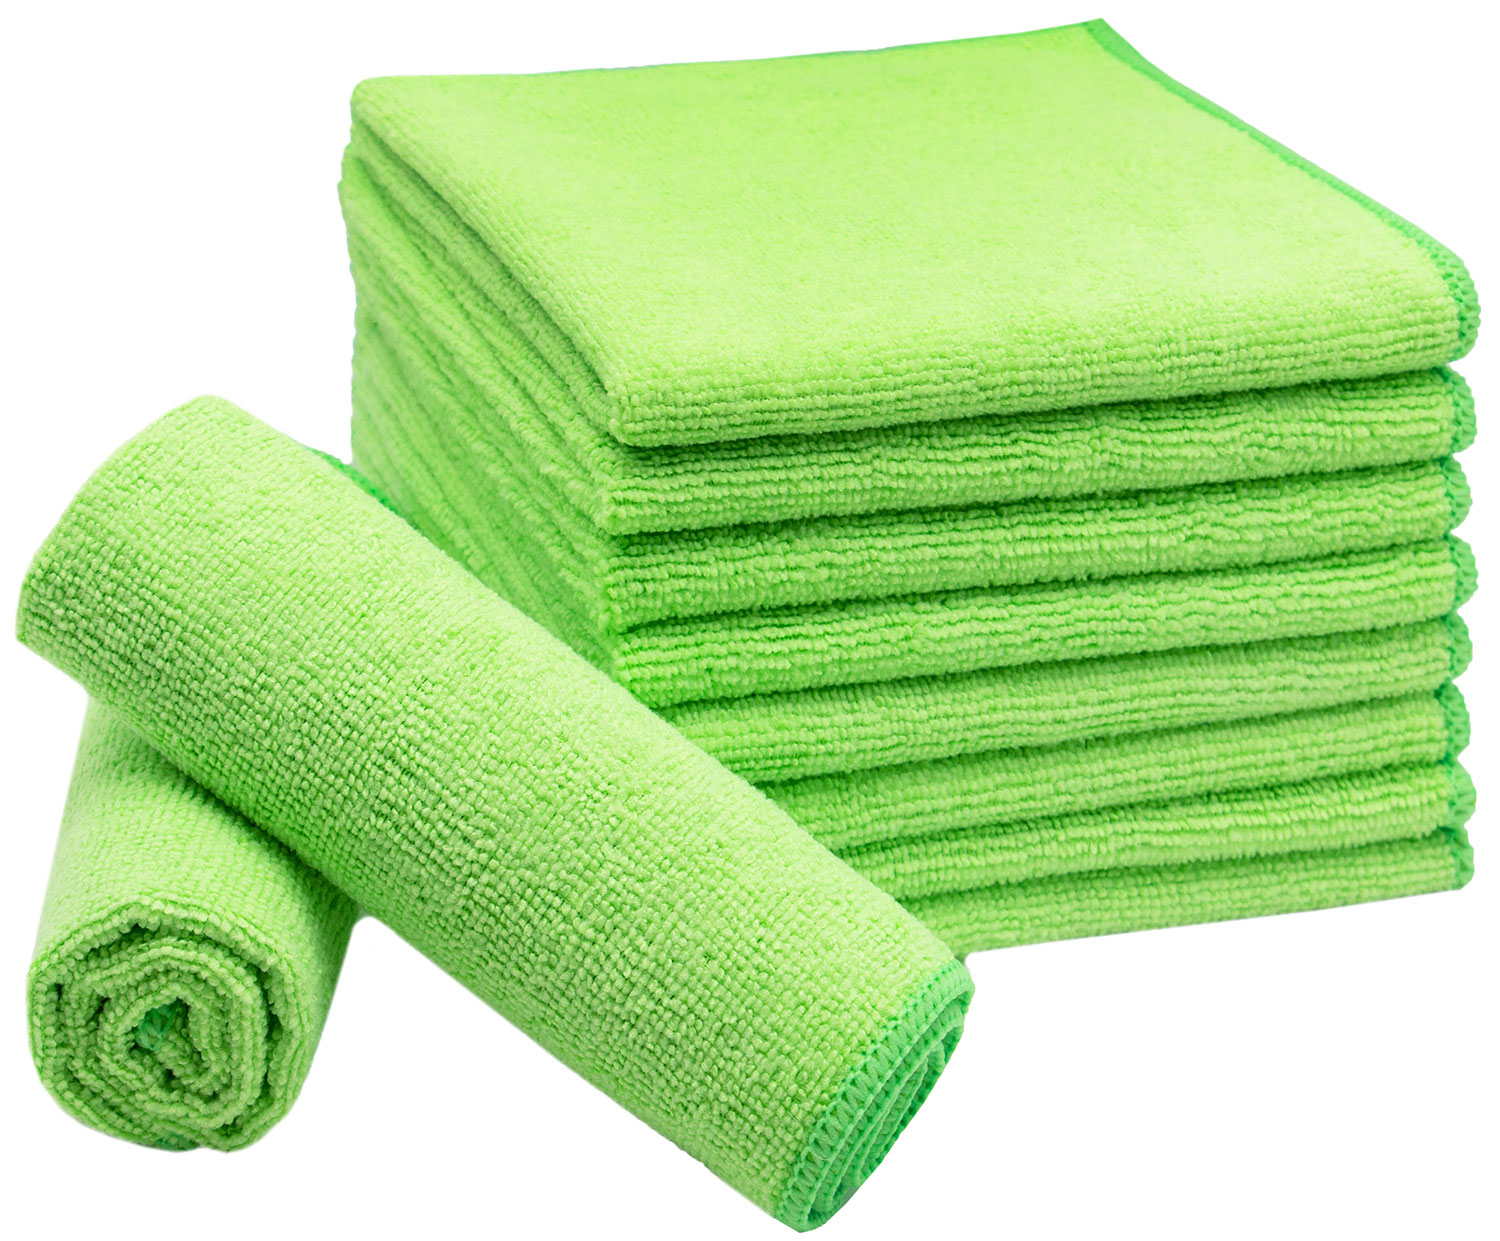 10 er Pack Microfasertuch Tuch Clean Pack 30x40 cm grün/grau 